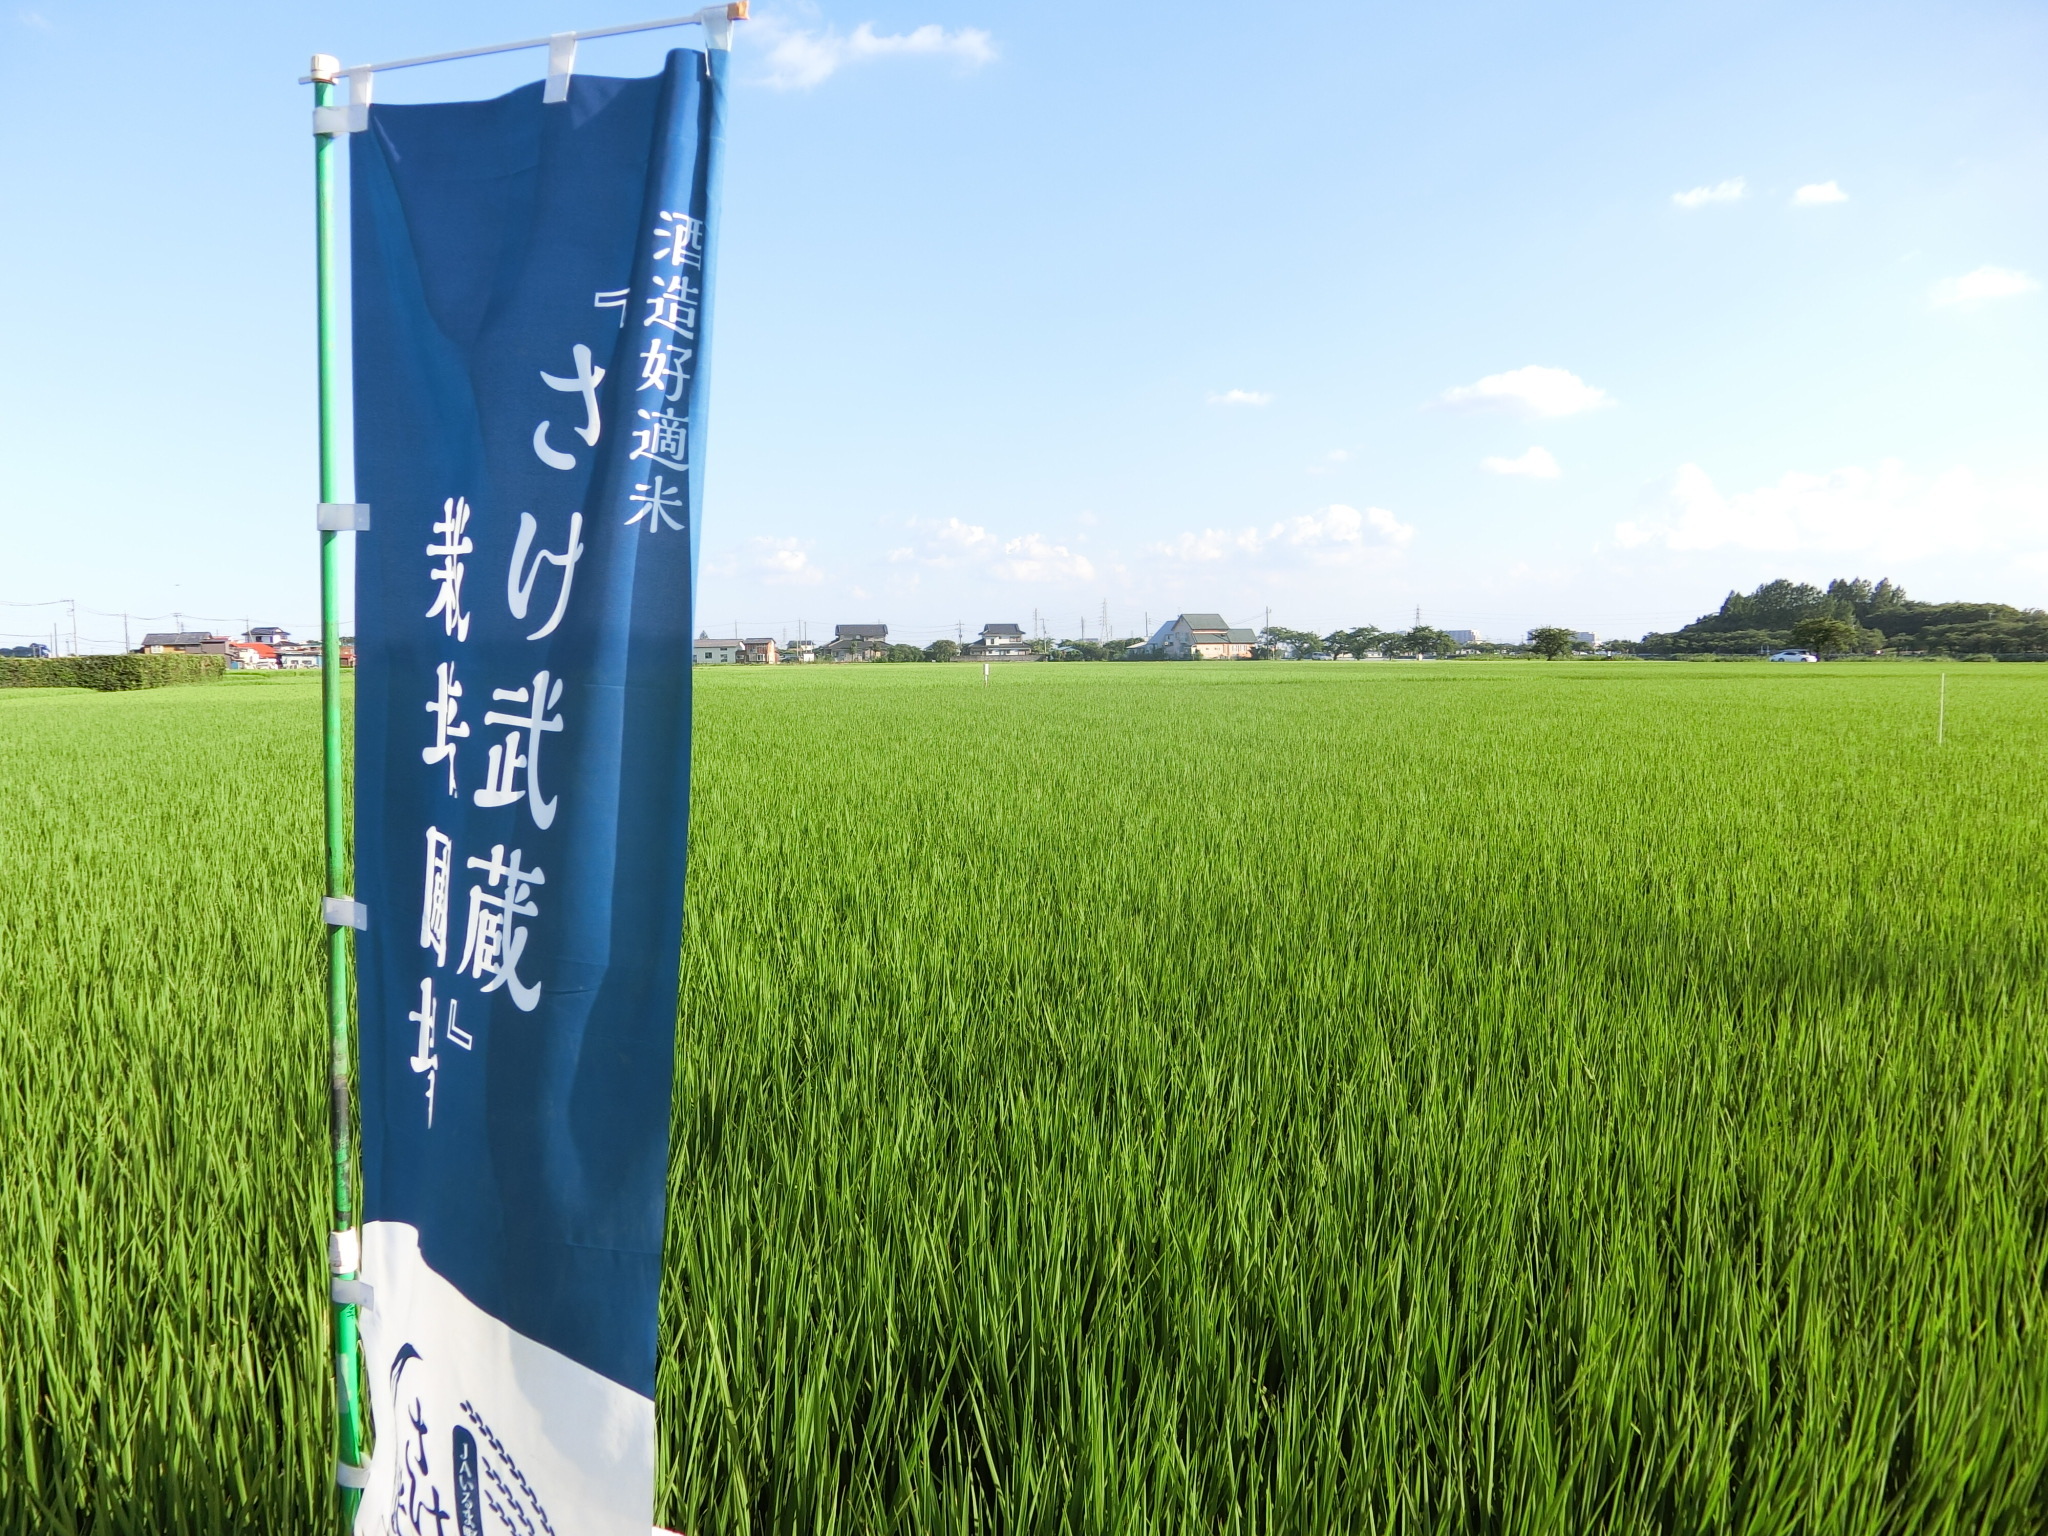 10月1日(土)埼玉県オリジナル品種の酒米「さけ武蔵」の稲刈り体験